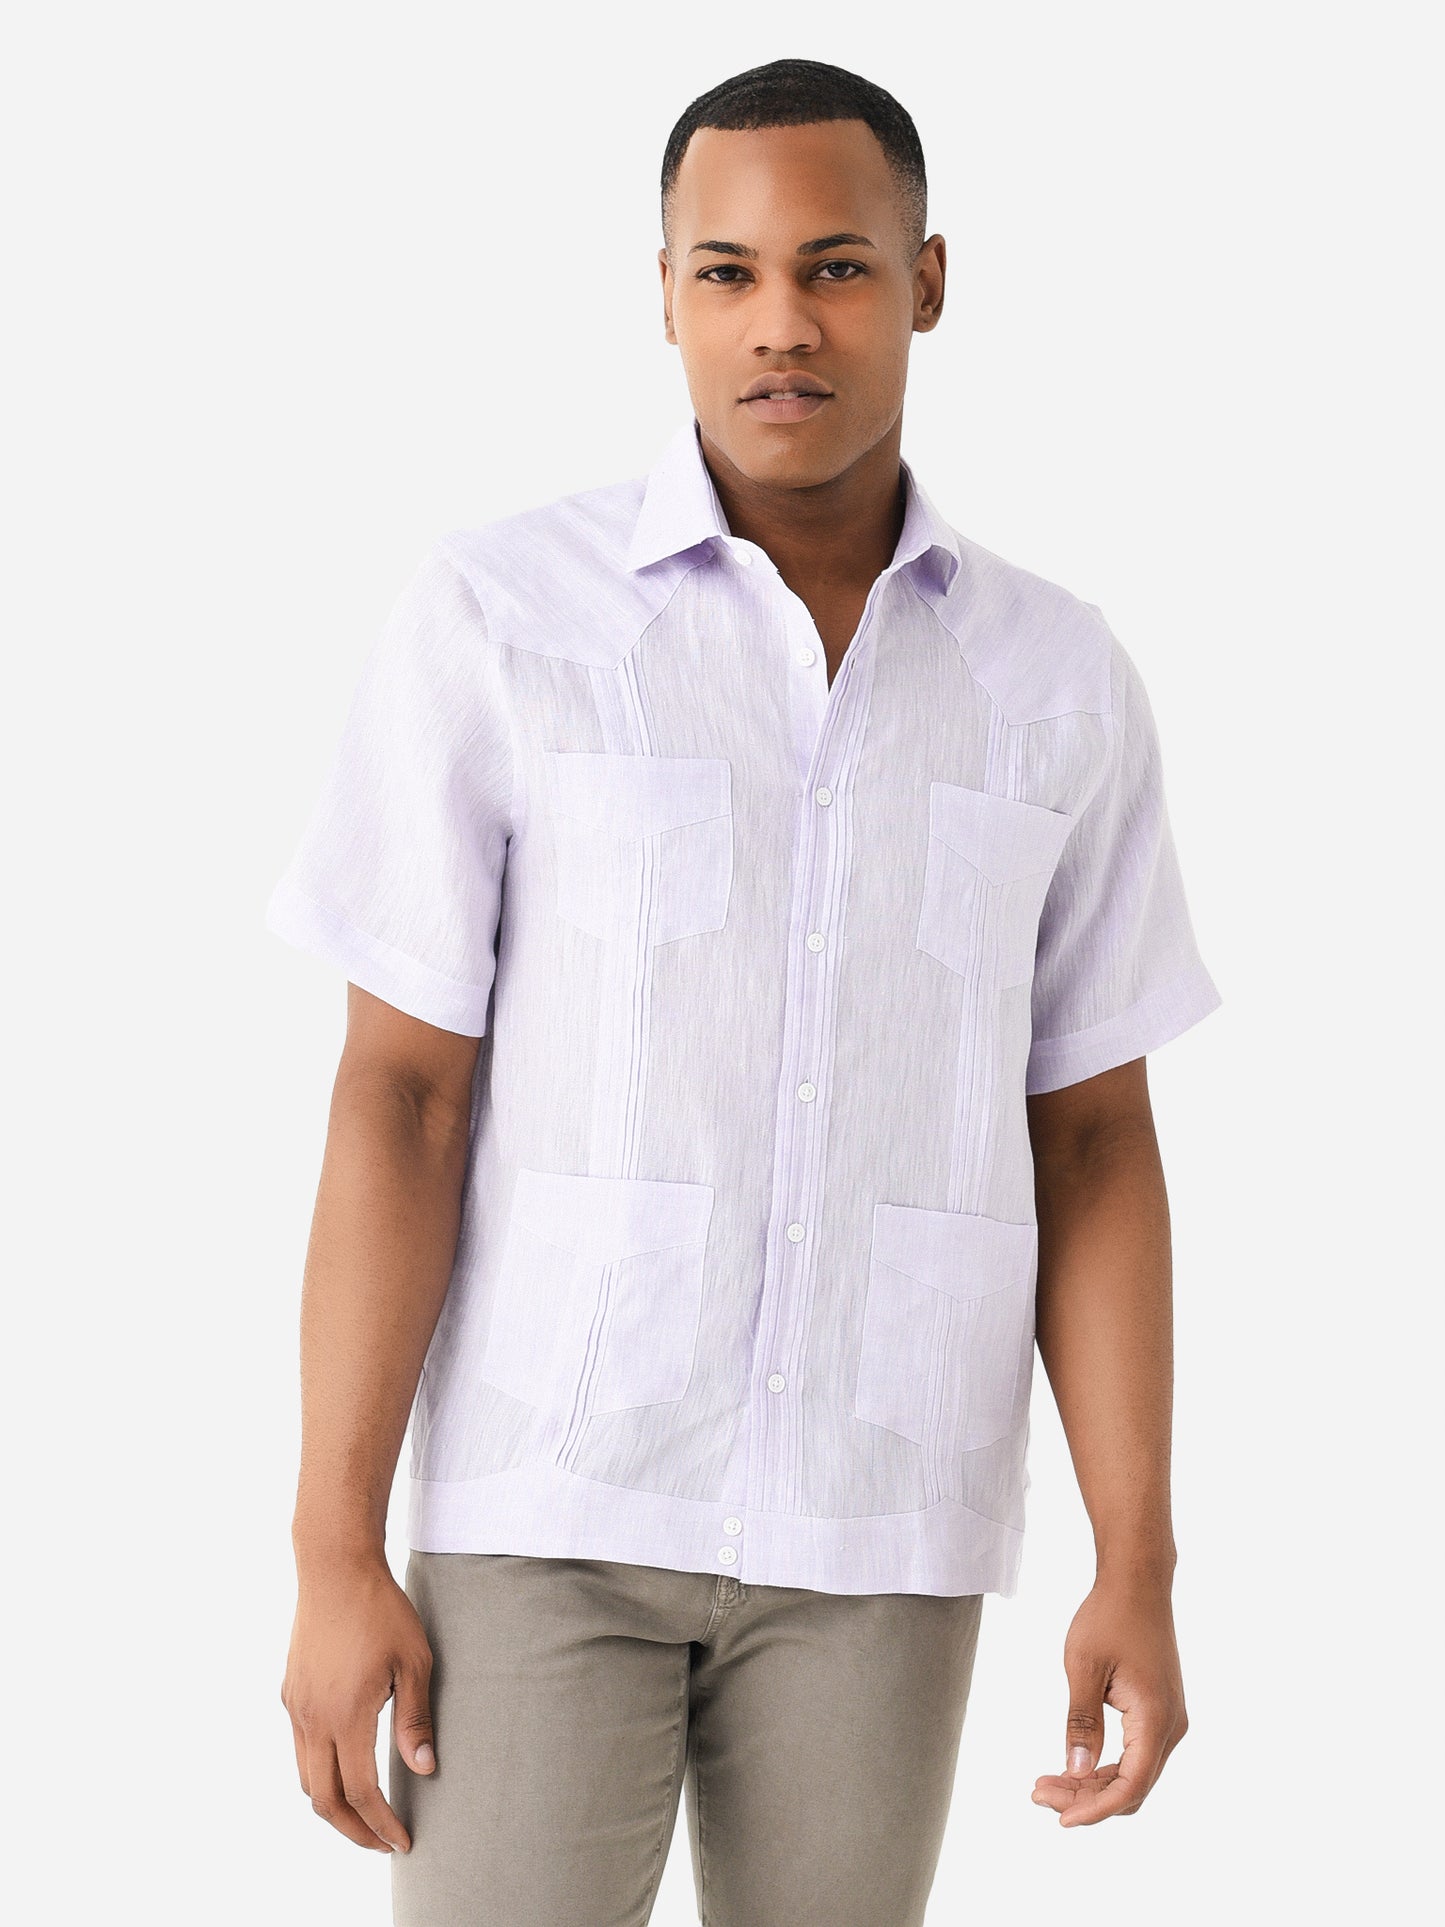 Saint Bernard Men's Short Sleeve Guayabera Shirt